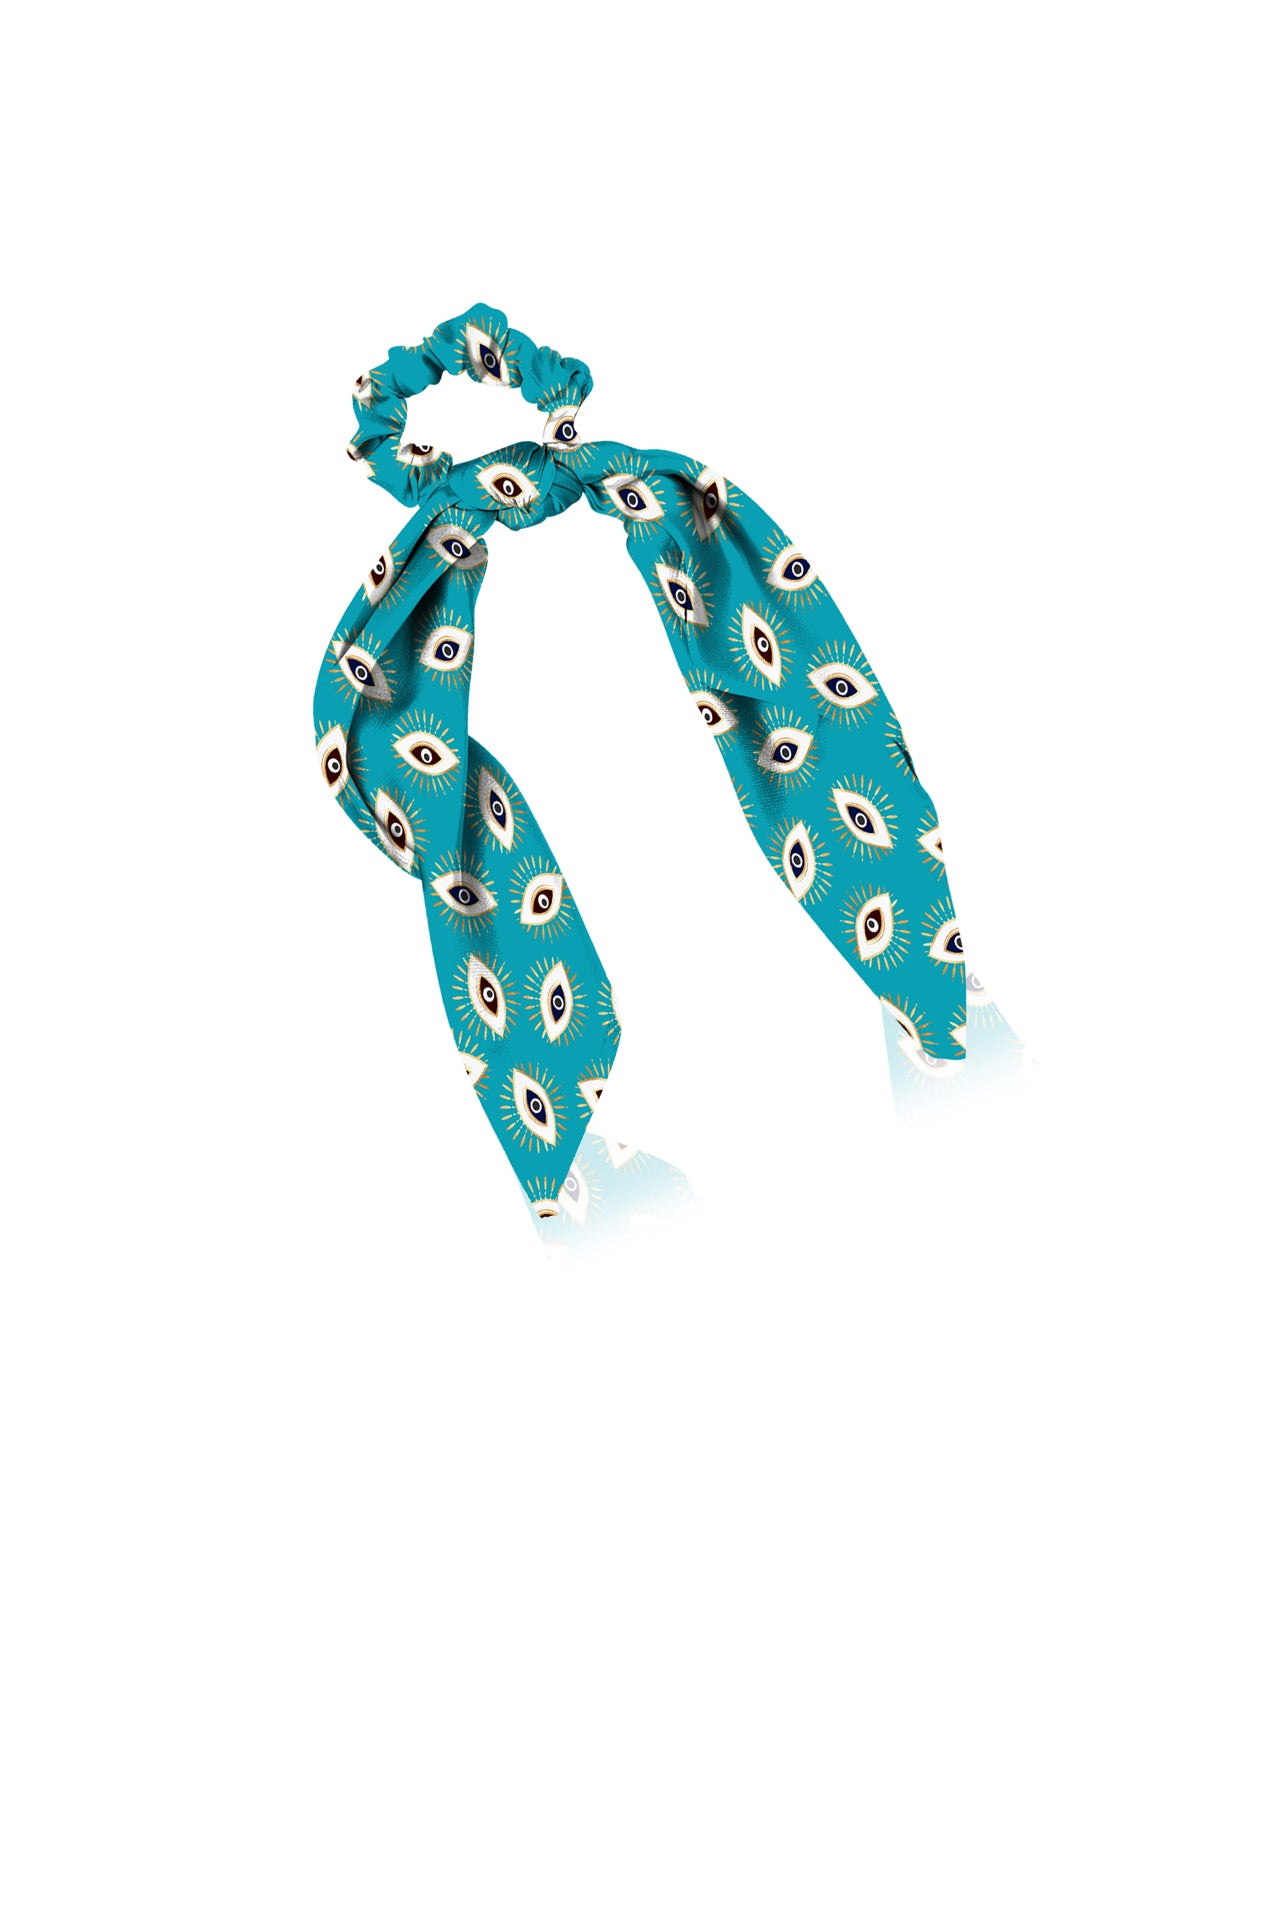 "Kyle X Shahida" "luxury scrunchies" "hair scrunchie scarf" "blue scarf scrunchies"